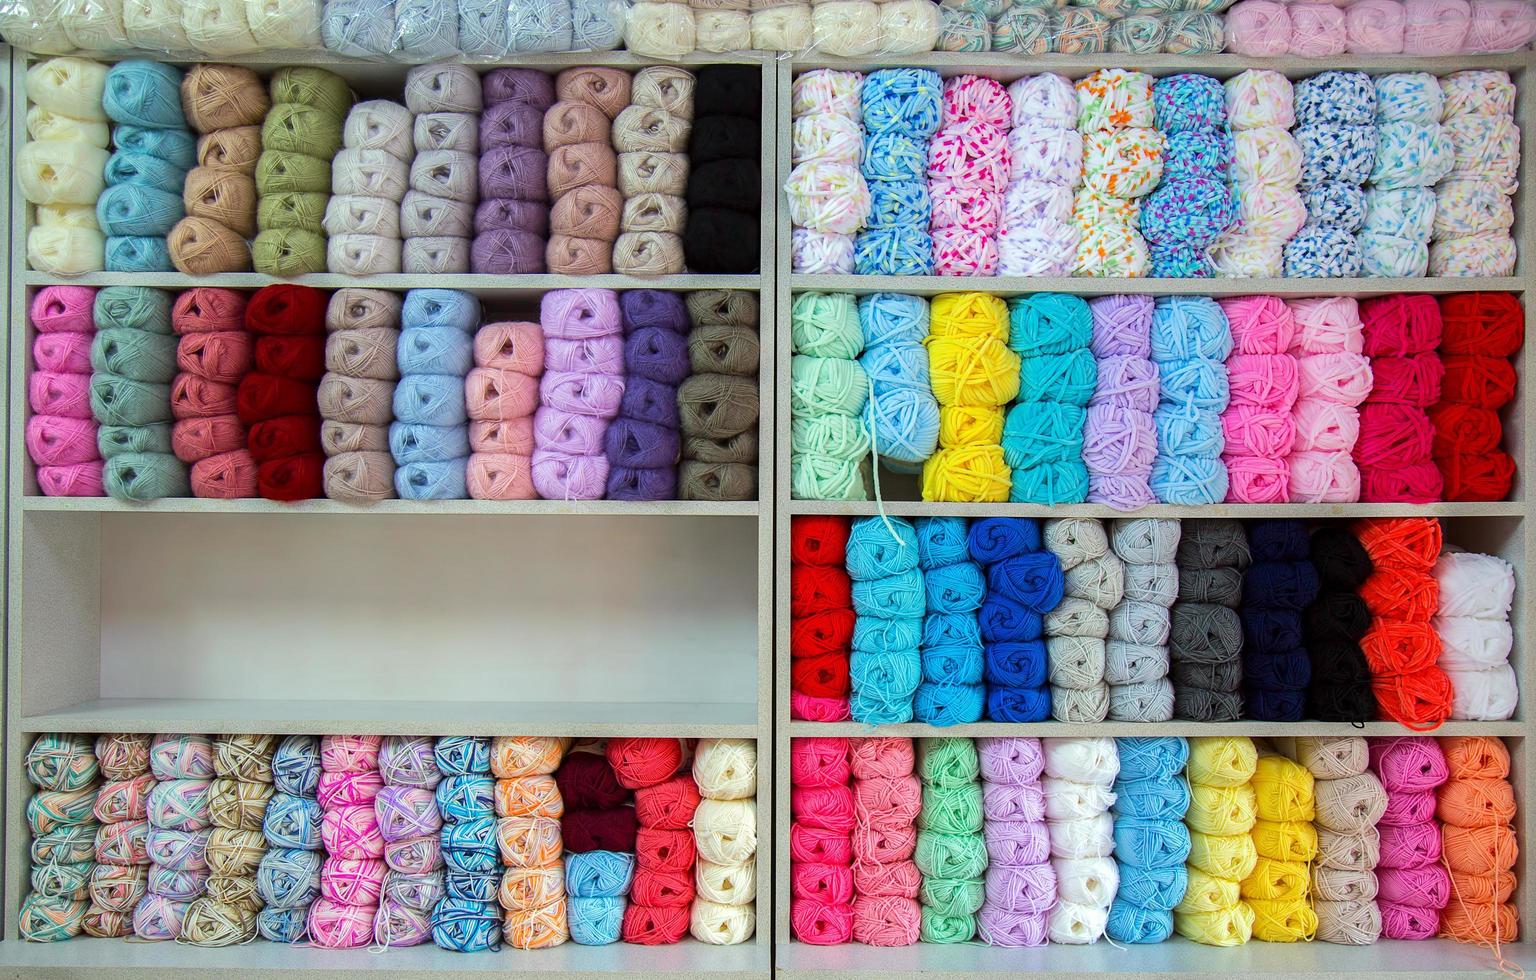 rolos de tecido industrial de material têxtil colorido de algodão foto